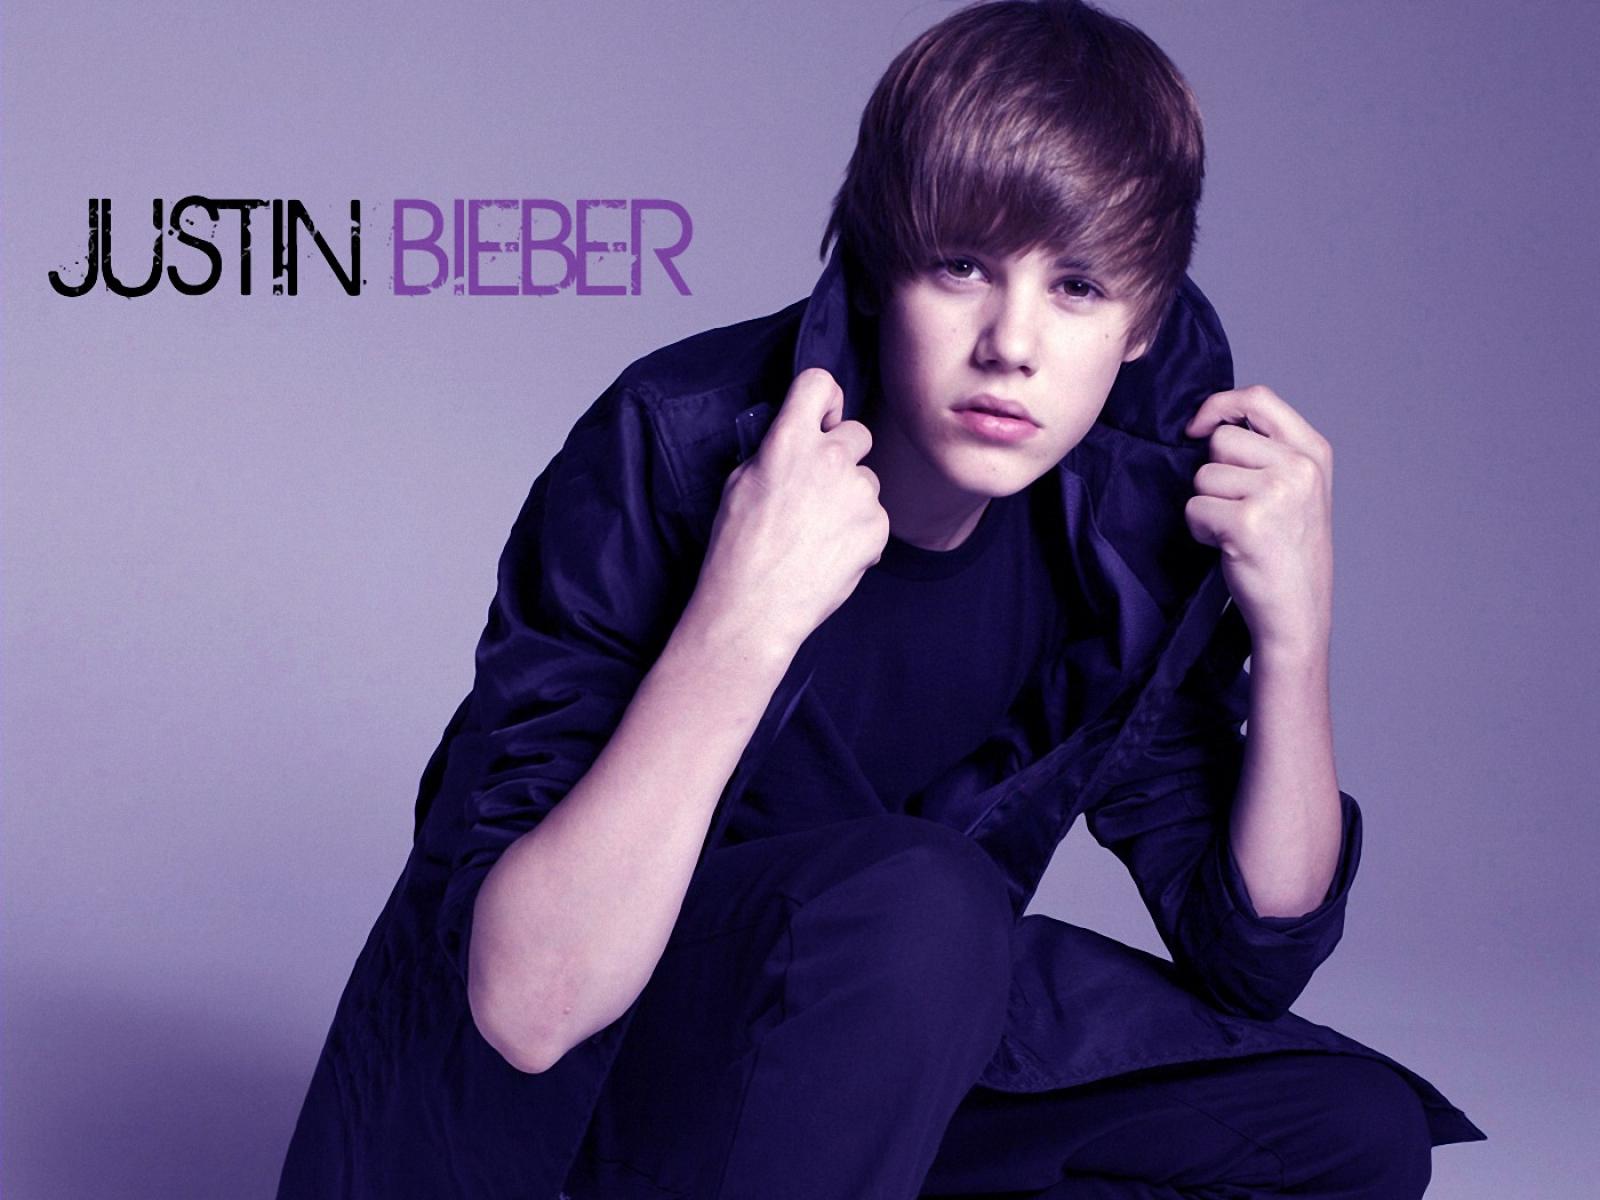 Justin Bieber Background. Justin Bieber Wallpaper, One Direction Bieber Wallpaper and Justin Bieber Boyfriend Wallpaper